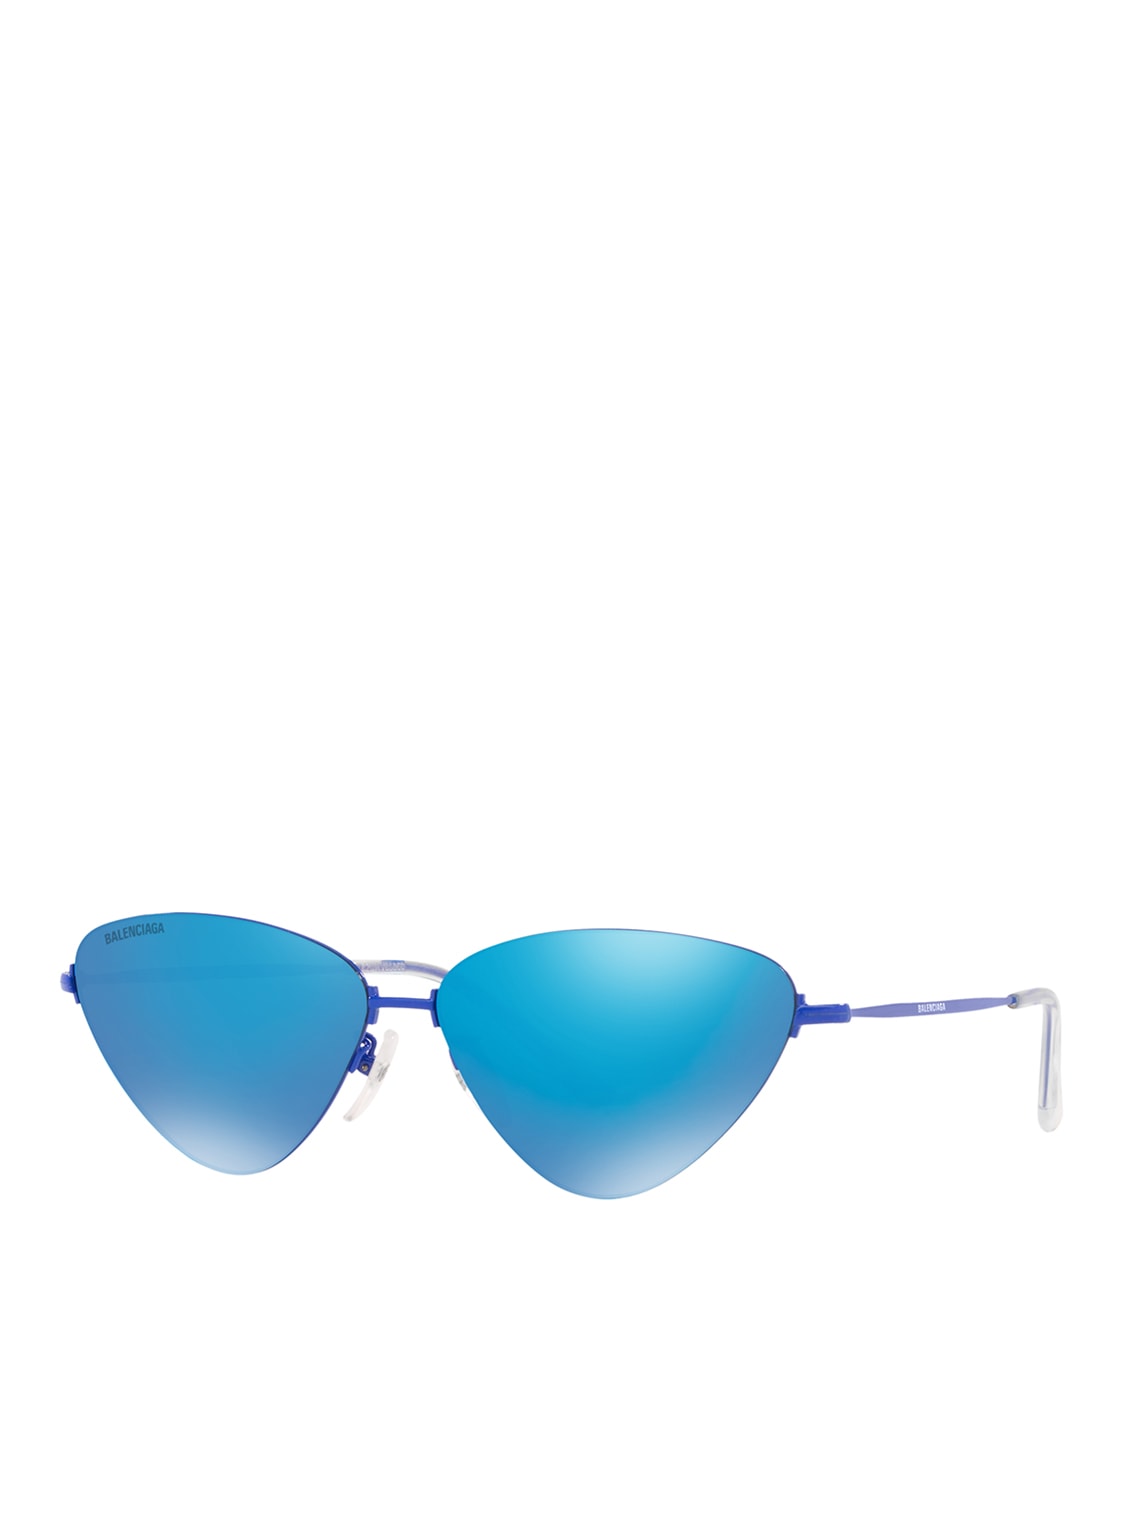 Balenciaga Sonnenbrille bb0015s blau